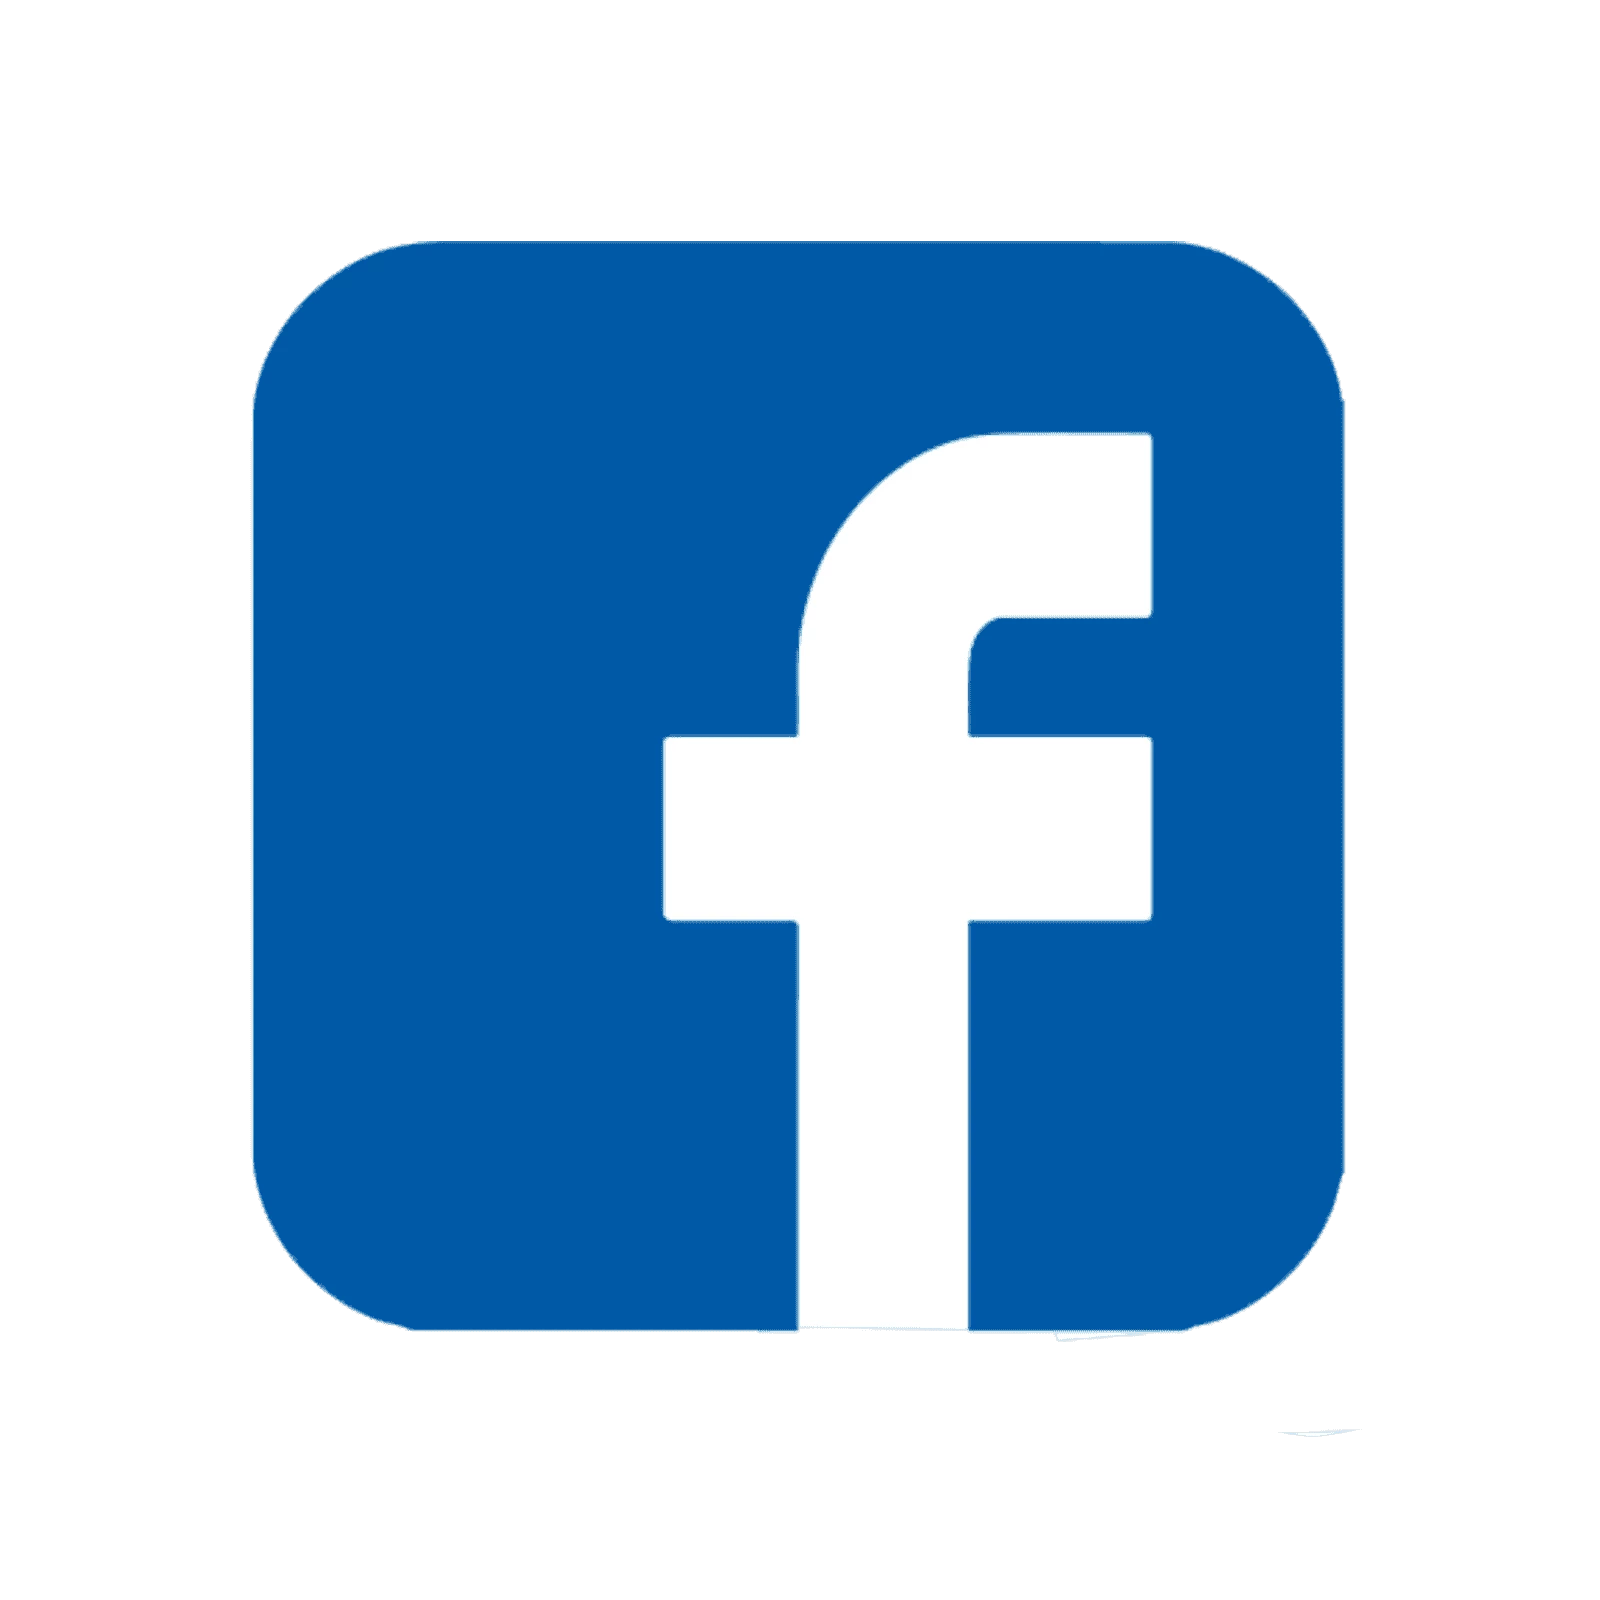 Facebook Logos